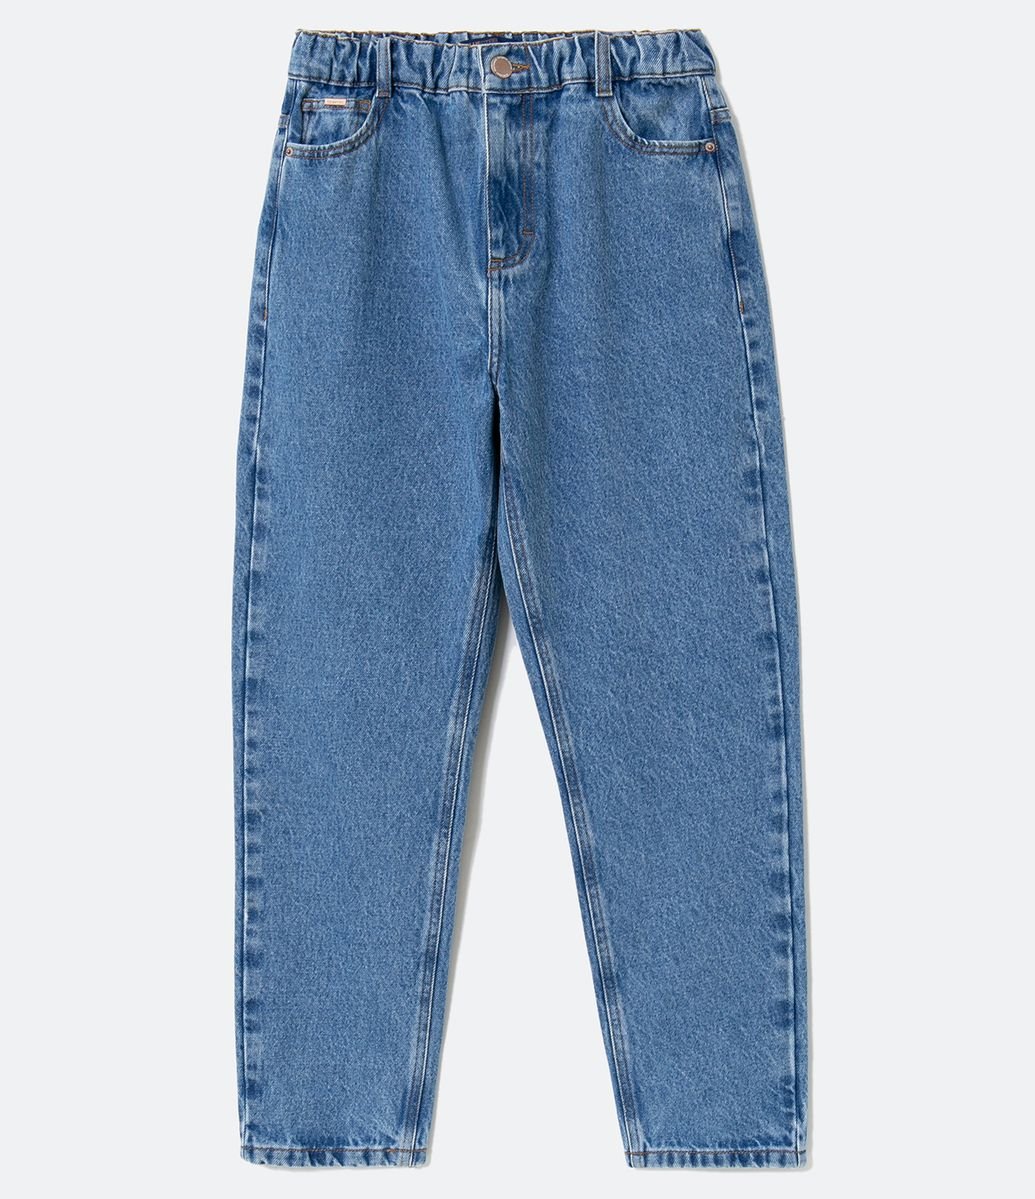 jeans com elastico na cintura